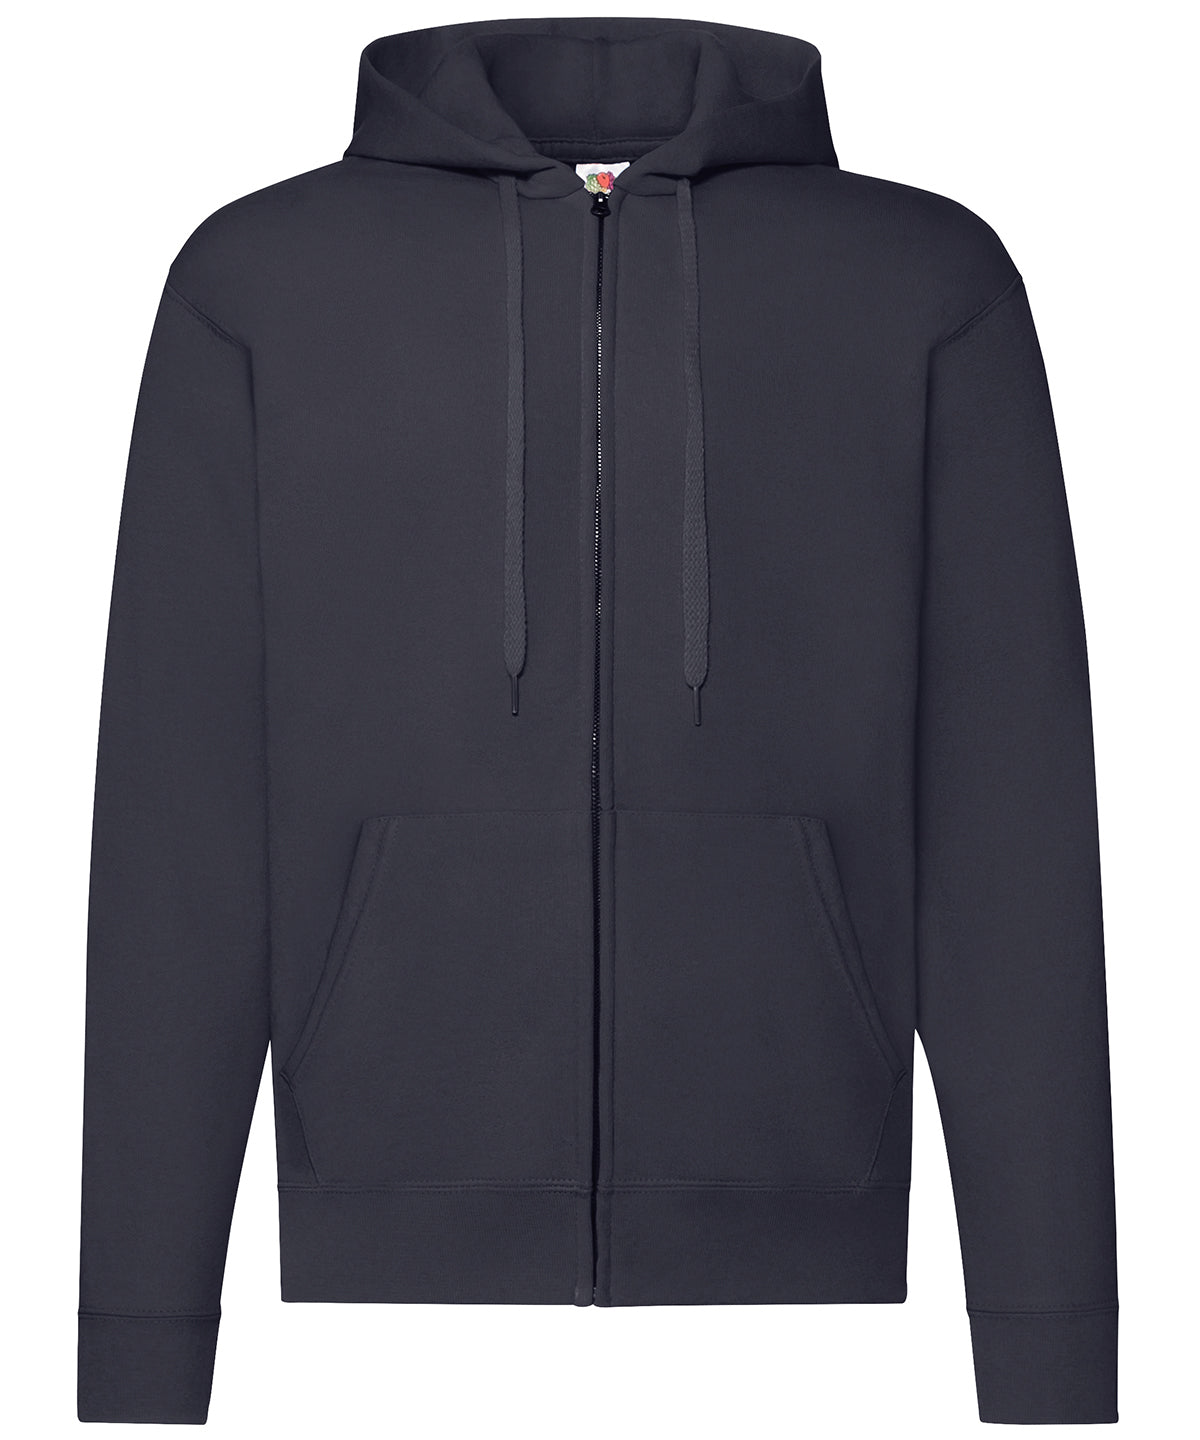 Personalised Hoodies - Black Fruit of the Loom Classic 80/20 hooded sweatshirt jacket